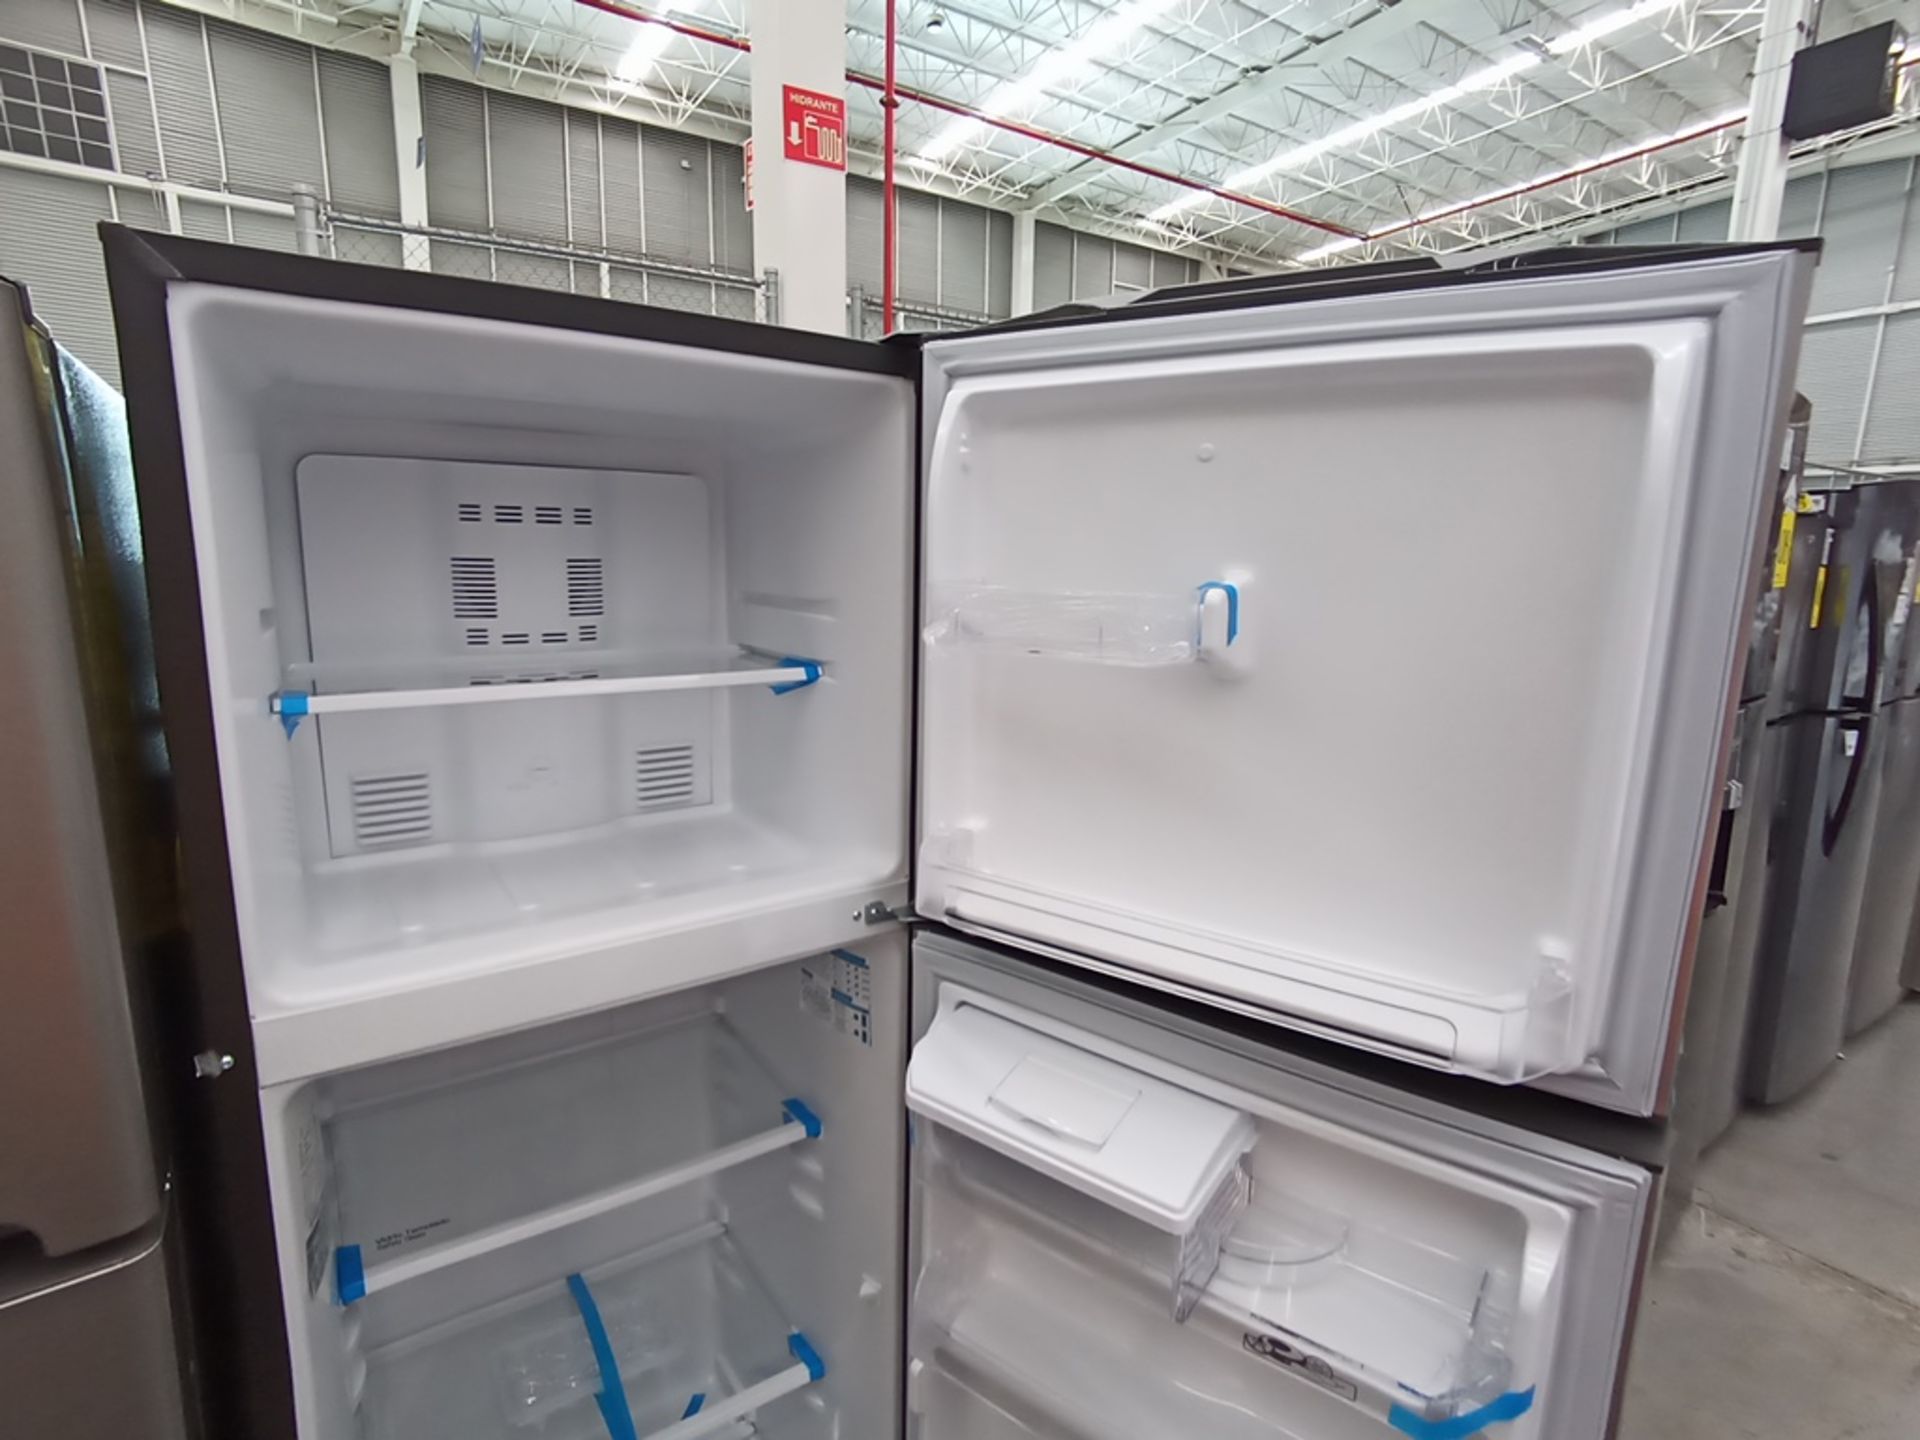 Lote de 2 refrigeradores contiene: 1 Refrigerador con dispensador de agua, Marca Mabe, Modelo RMA11 - Image 7 of 15